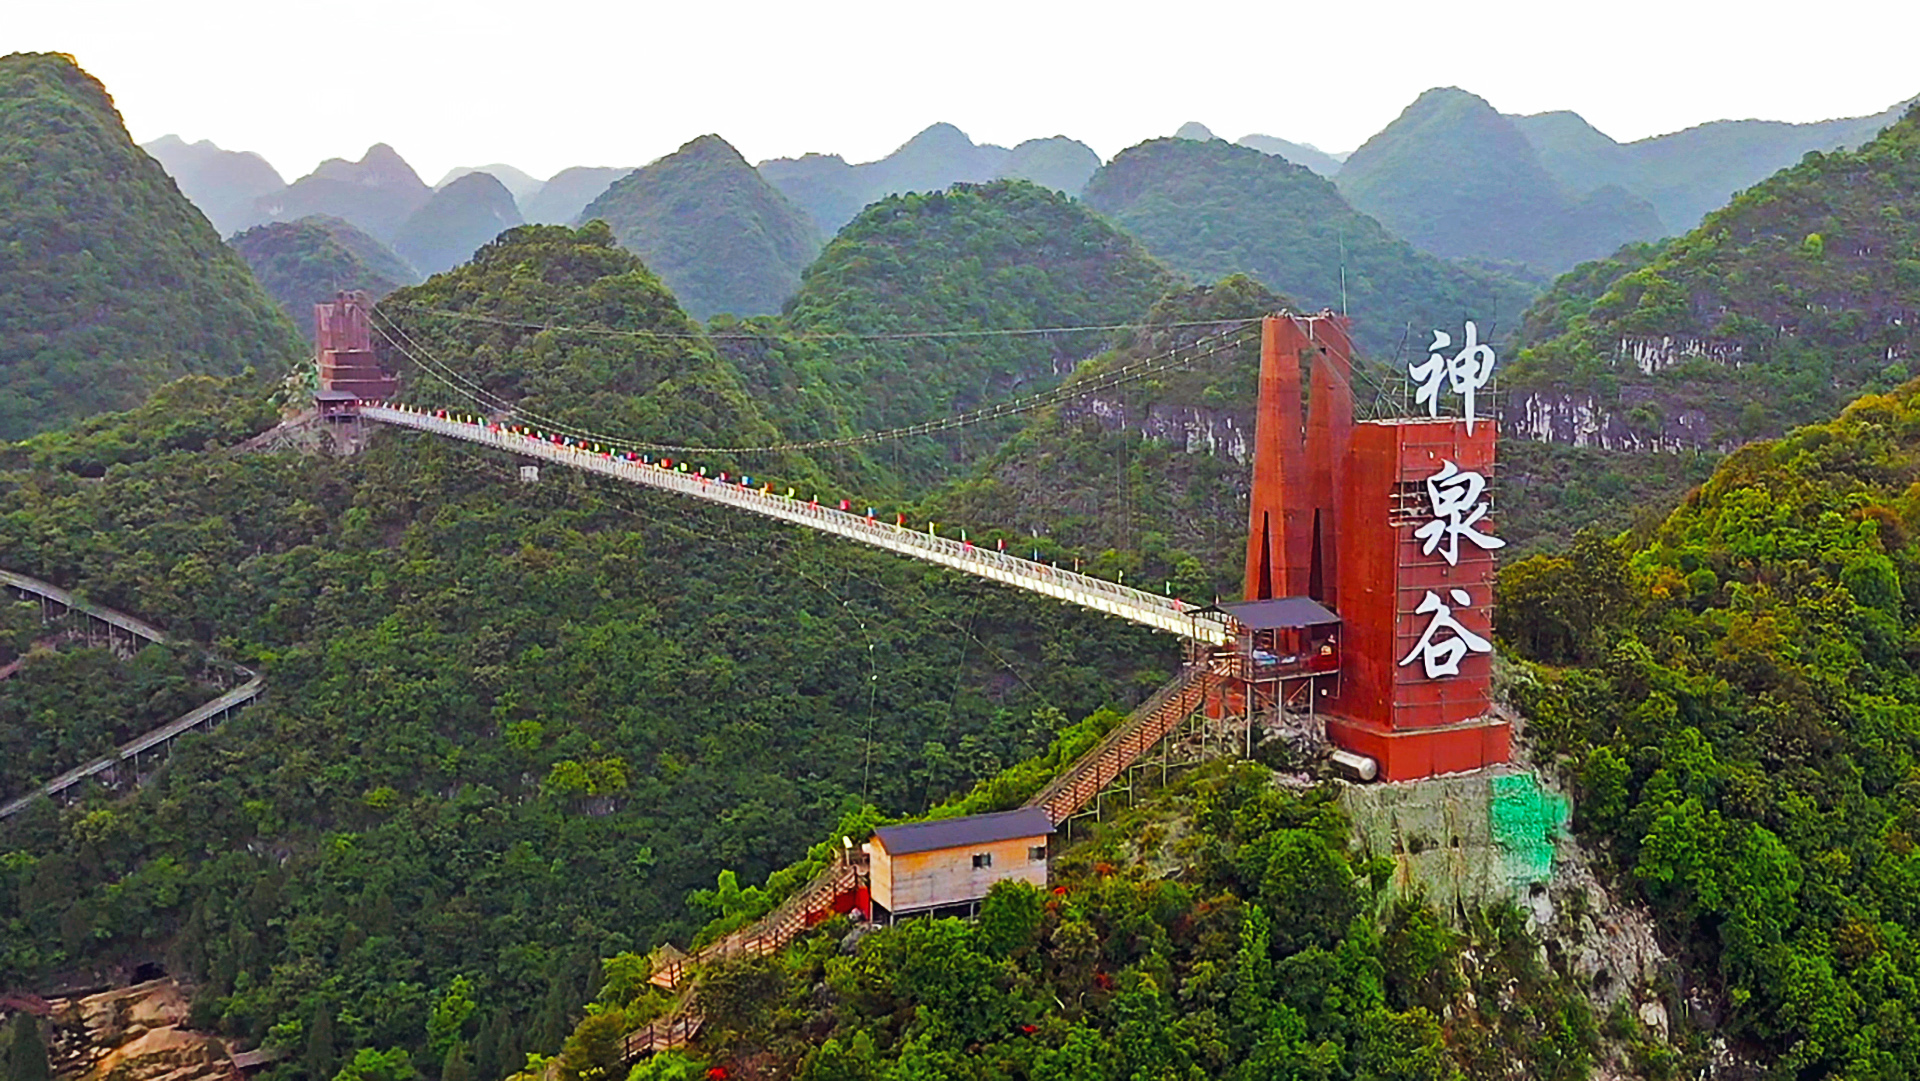 贵州长顺县有个玻璃桥,天桥与苍翠的山谷互相辉映,宛如仙境